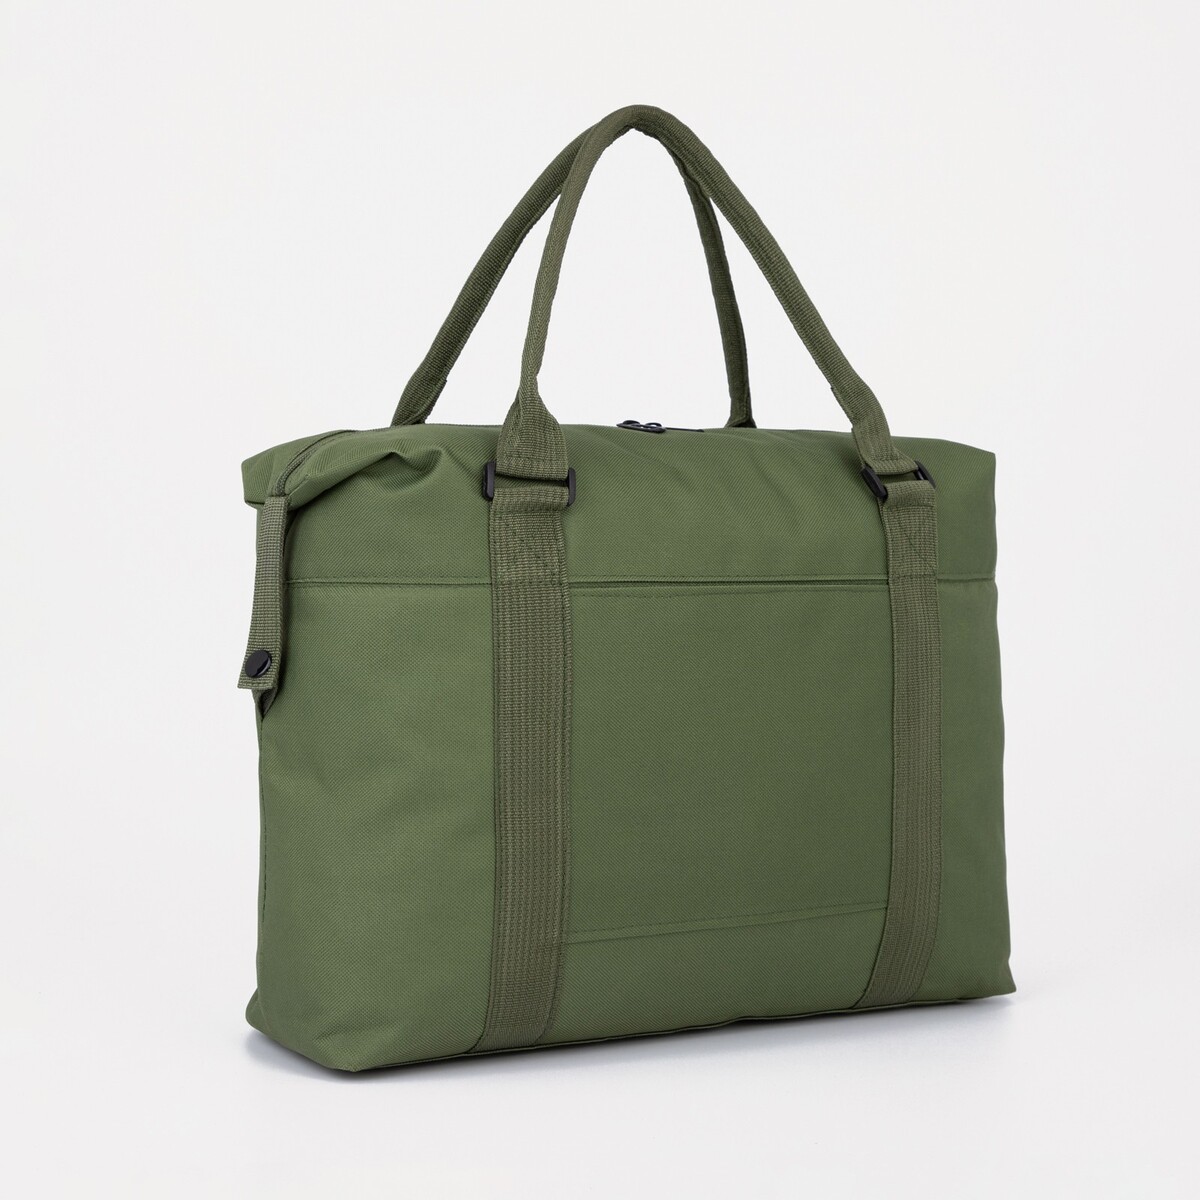 Сумка дорожная на молнии, наружный карман, цвет зеленый сумка молодежная на молнии 1 наружный карман зеленый